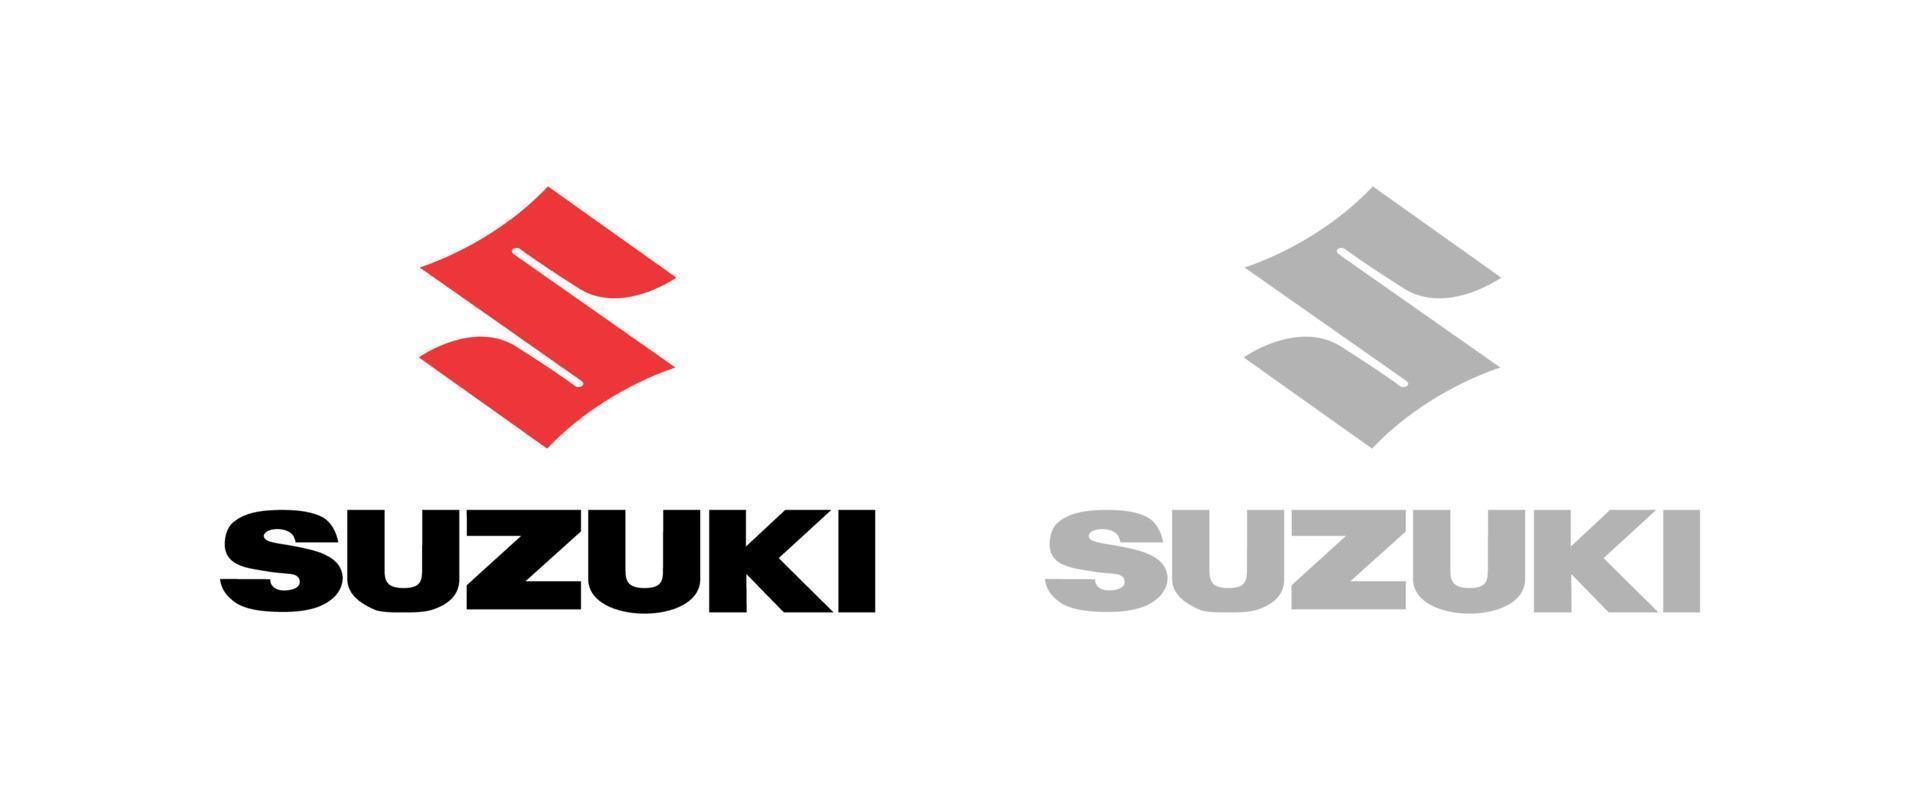 maruti suzuki logo vector, maruiti icon free vector